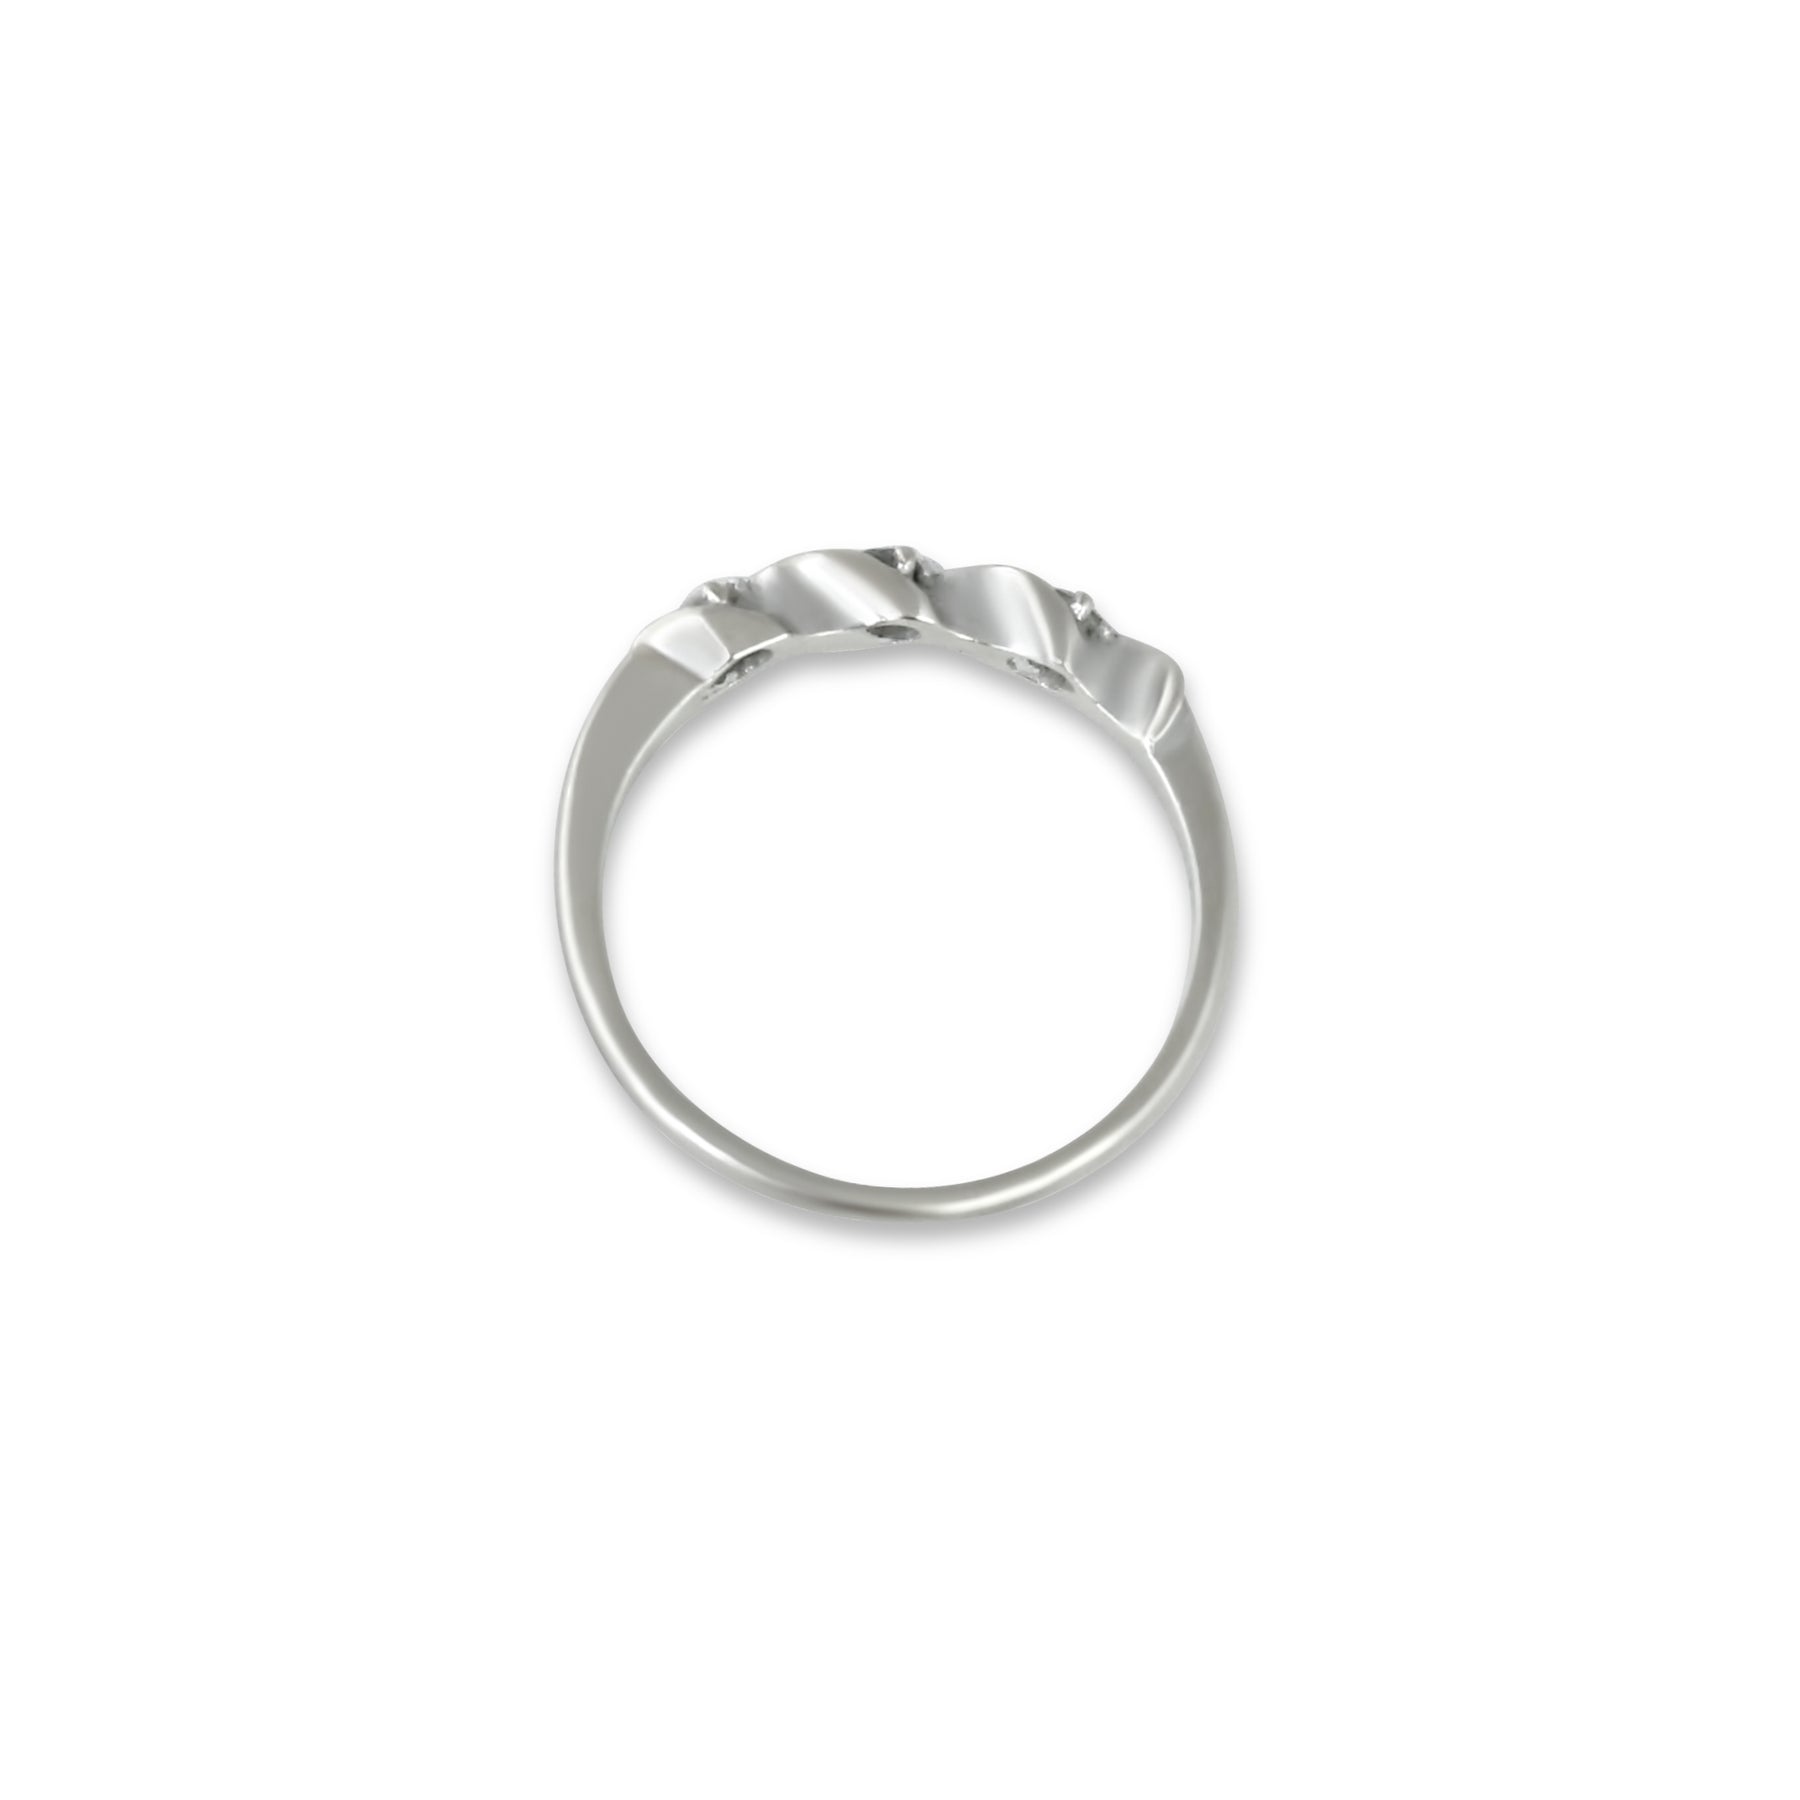 Empreinte white gold ring Louis Vuitton Silver size 8 US in White